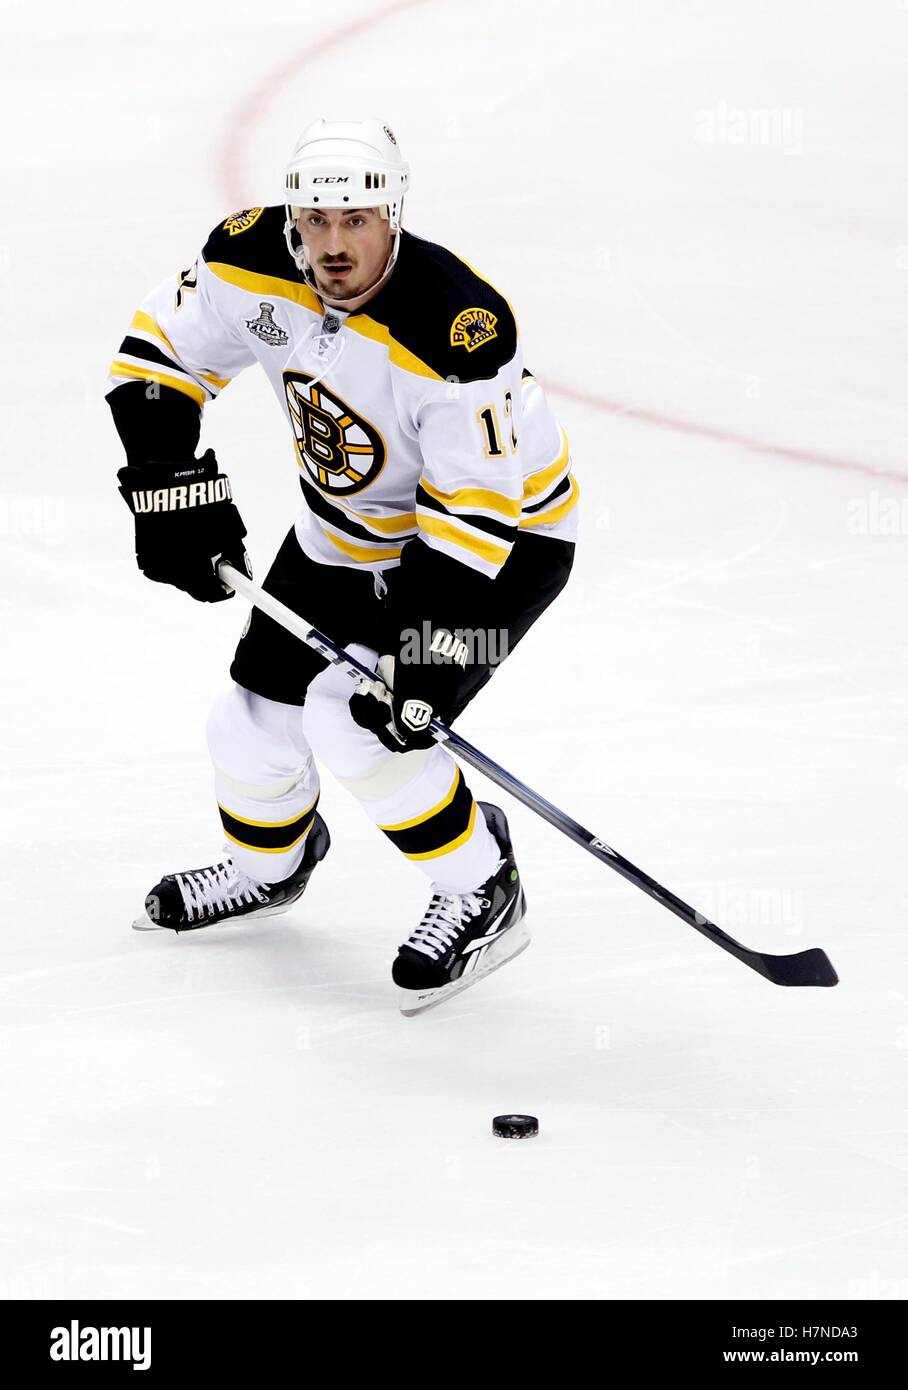 Giugno 10, 2011; Vancouver, BC, Canada; Boston Bruins defenceman tomas kaberle durante il gioco cinque del 2011 finali della Coppa di Stanley contro il Vancouver Canucks di rogers arena. Il canucks ha vinto 1-0. Foto Stock